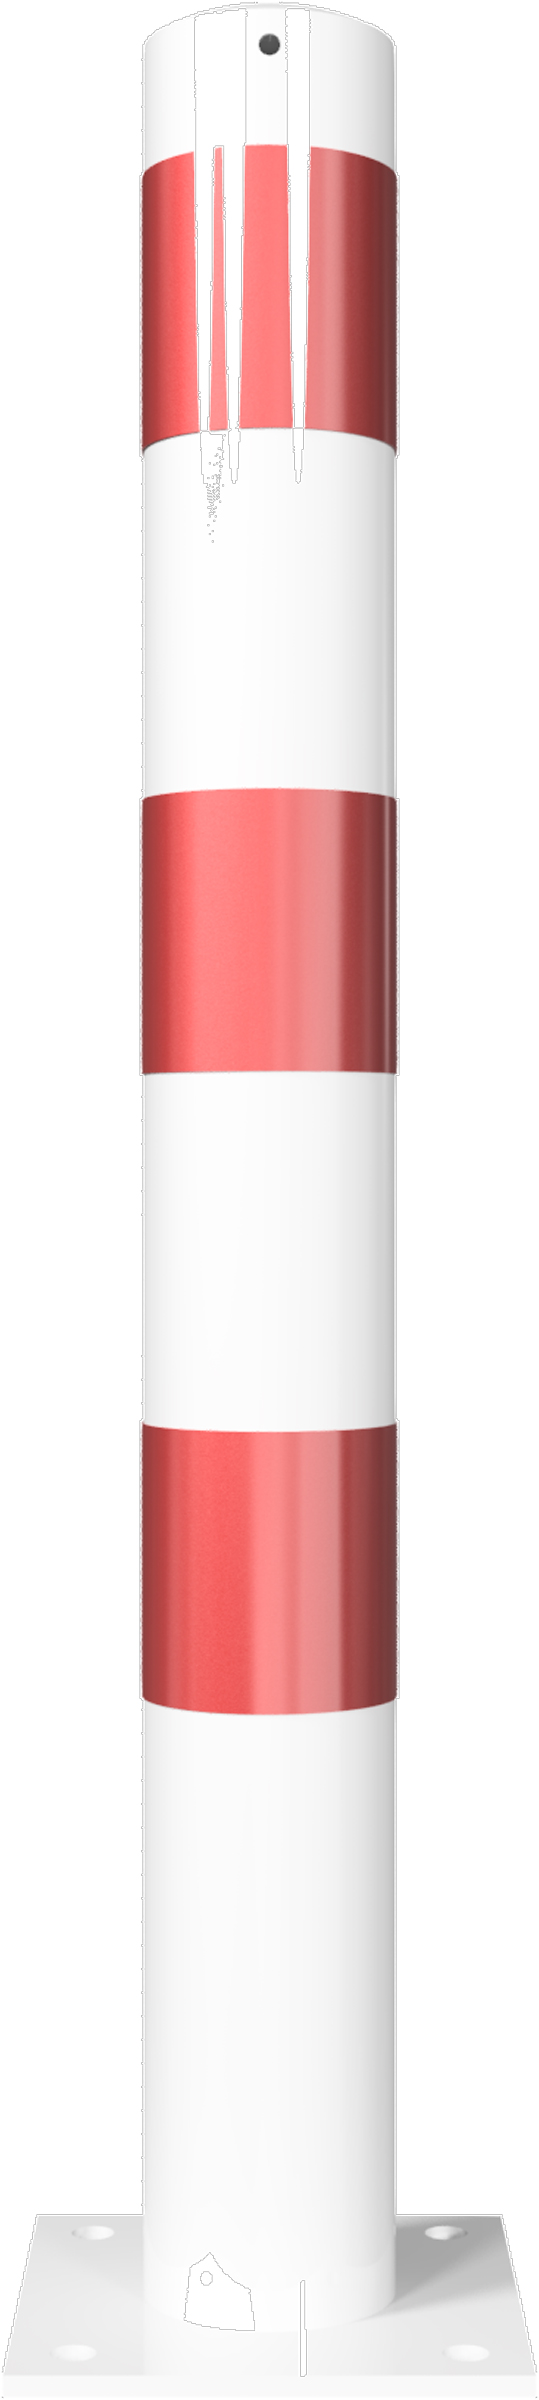 Schake Absperrpfosten OD Ø 102 mm weiß | rot